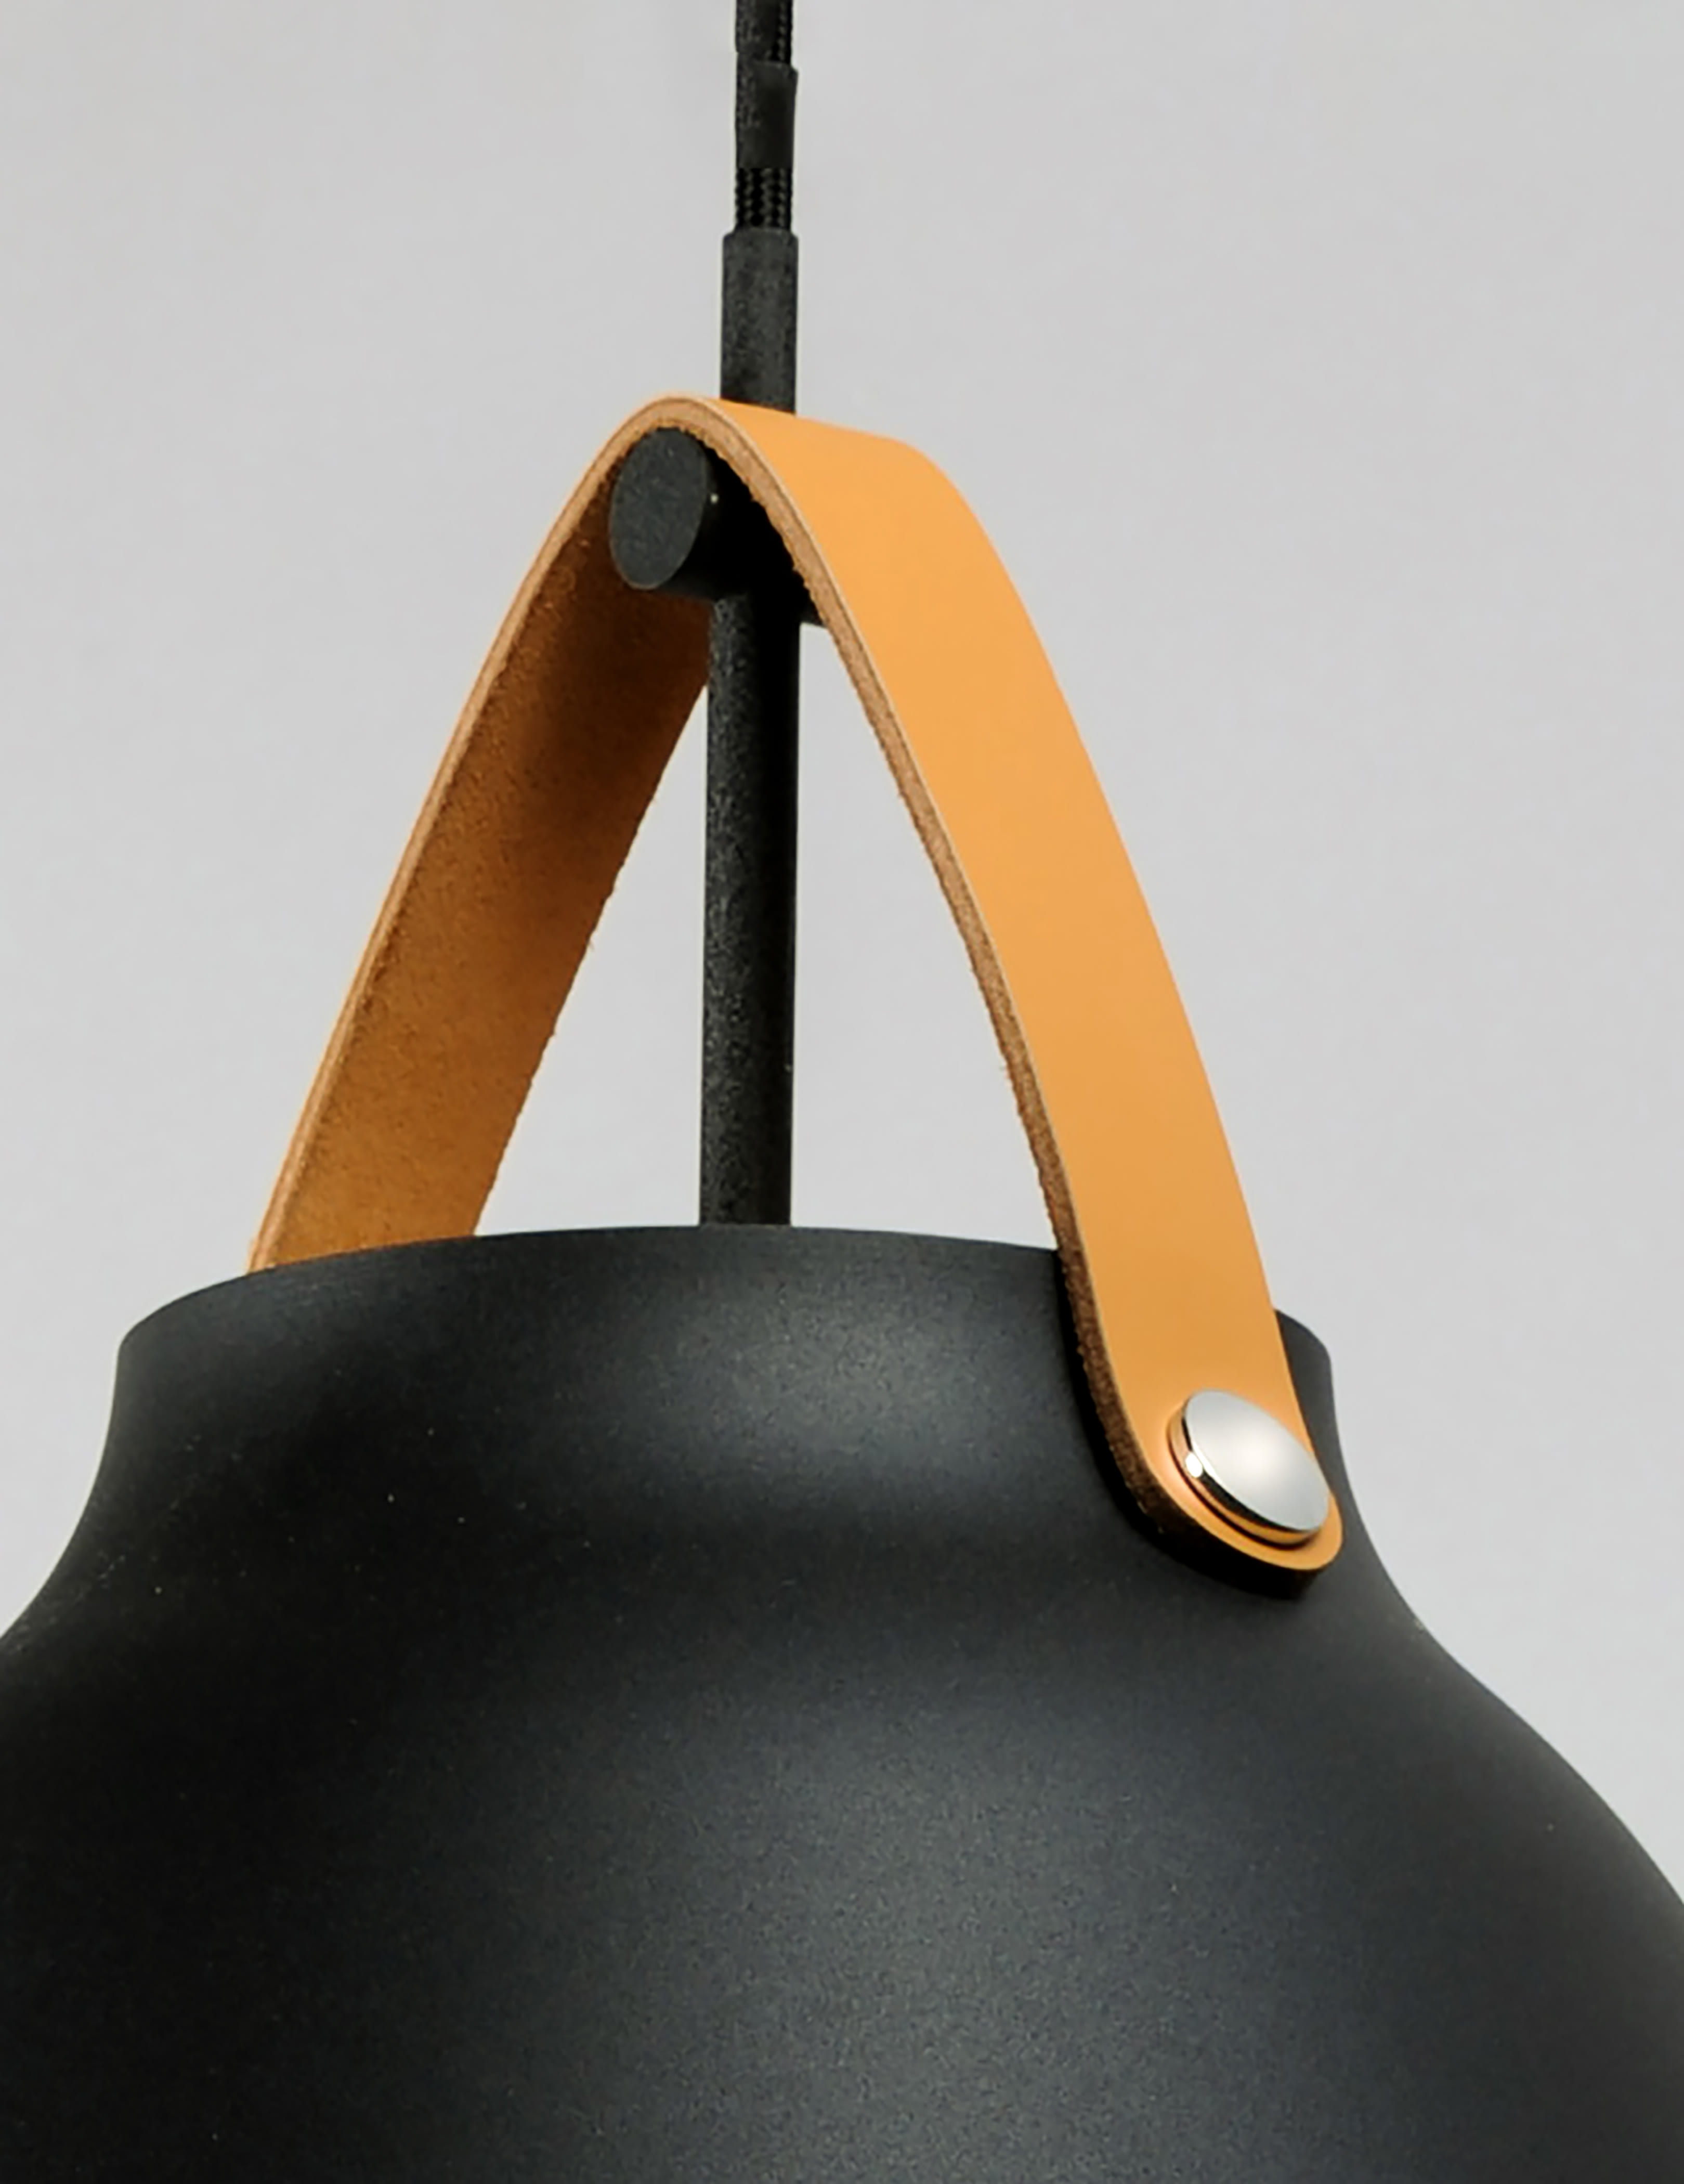 Diyafas Ladies Adjustable Leather … curated on LTK